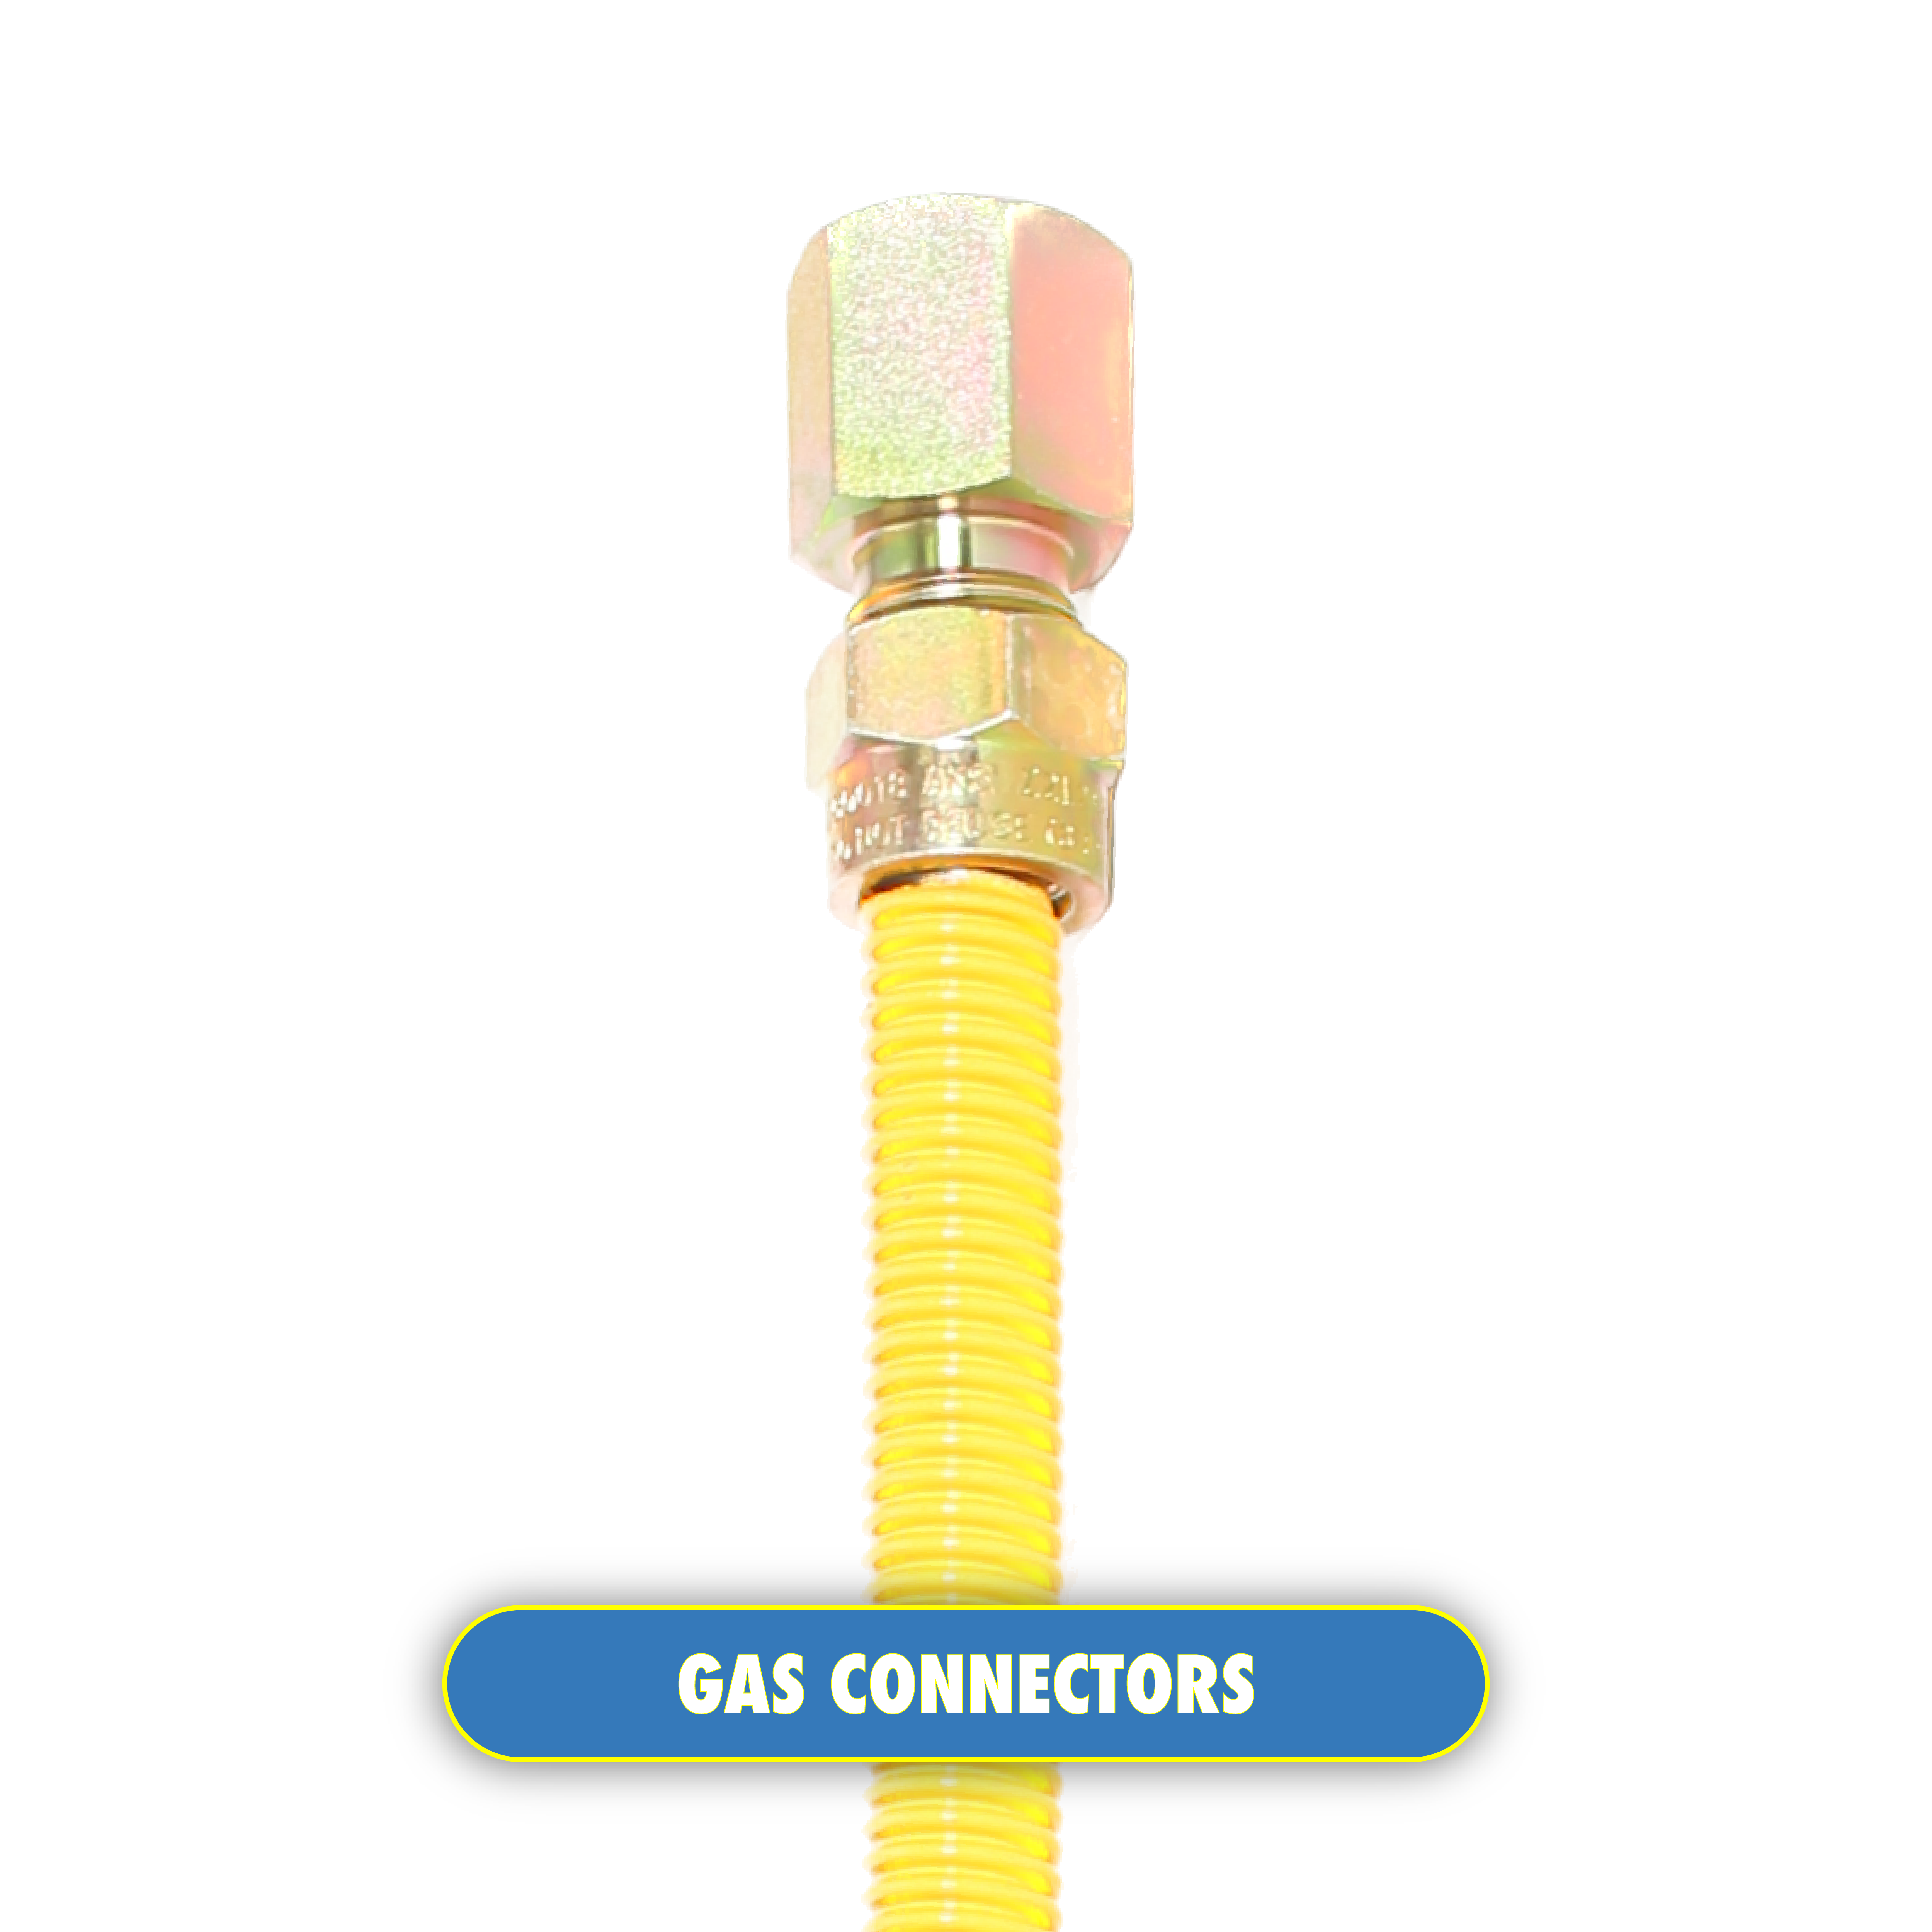 Gas connectors